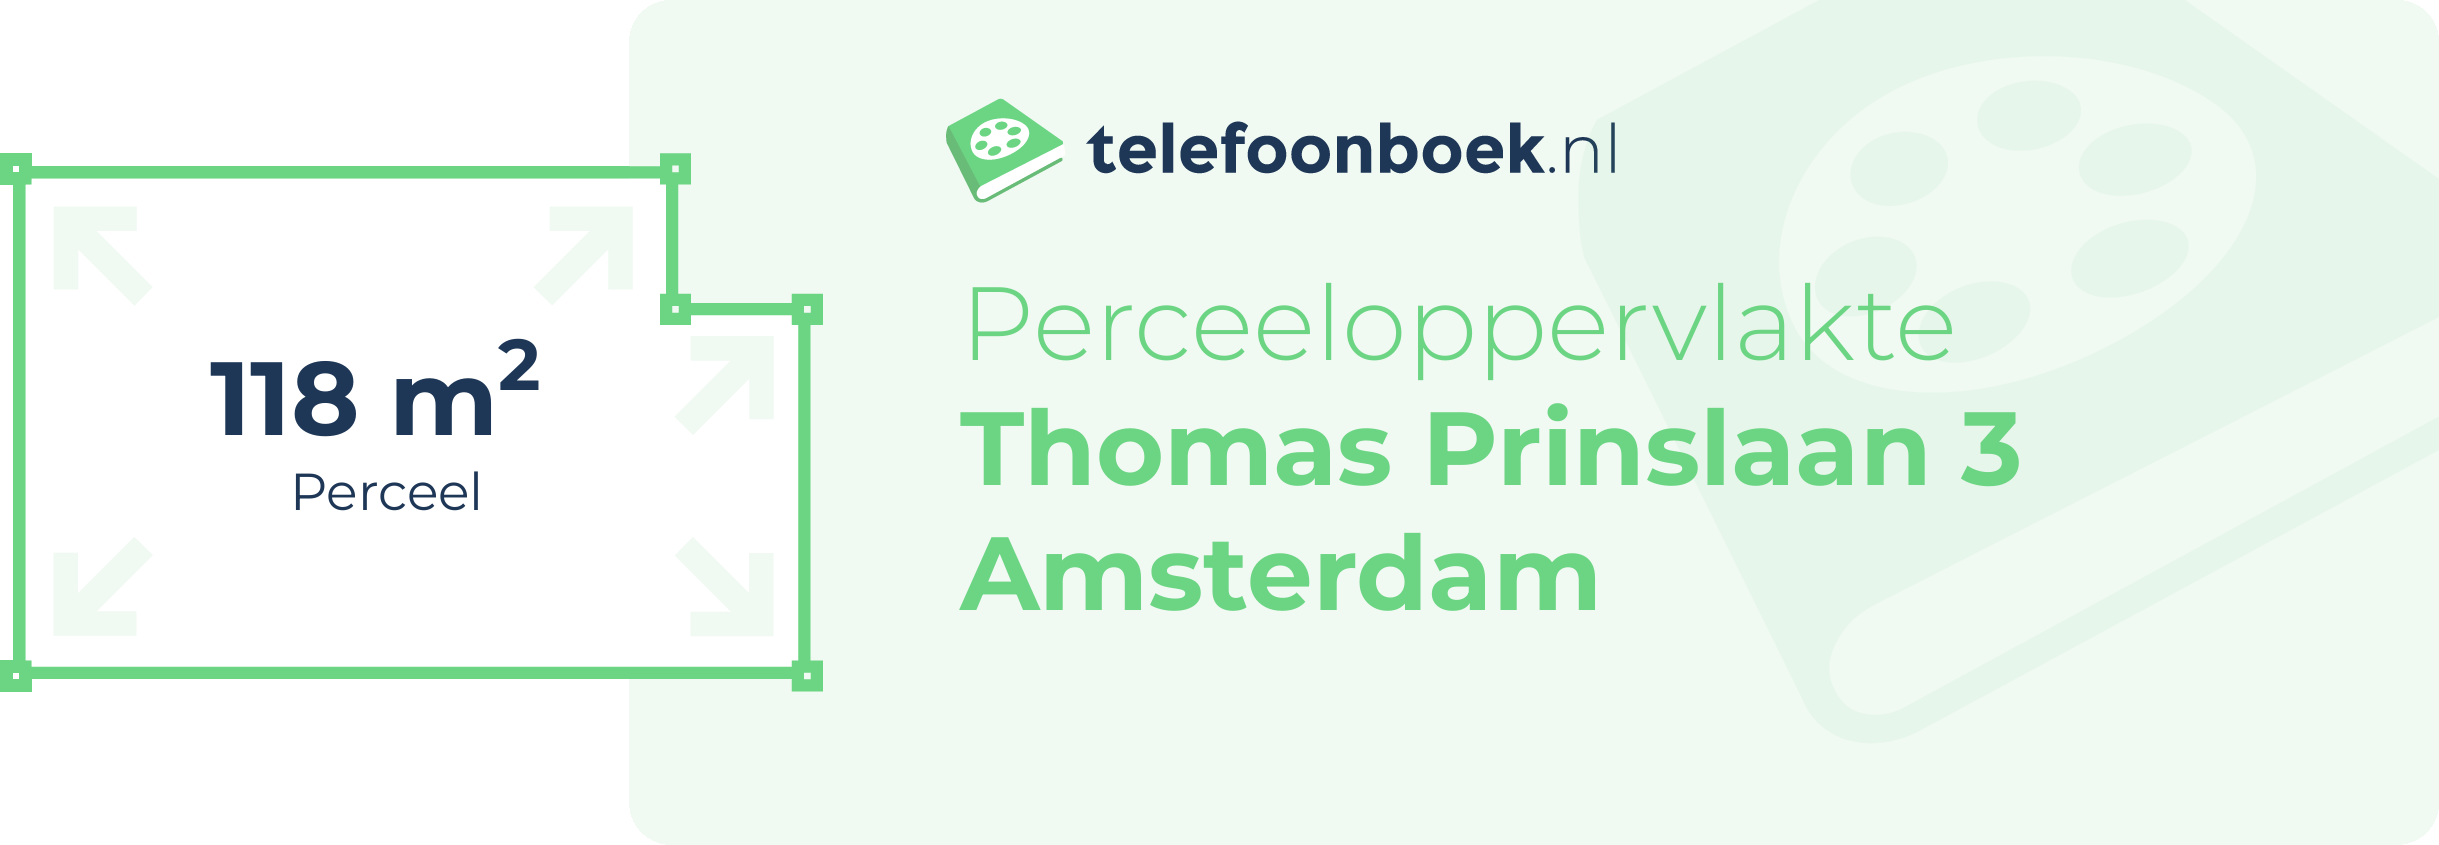 Perceeloppervlakte Thomas Prinslaan 3 Amsterdam